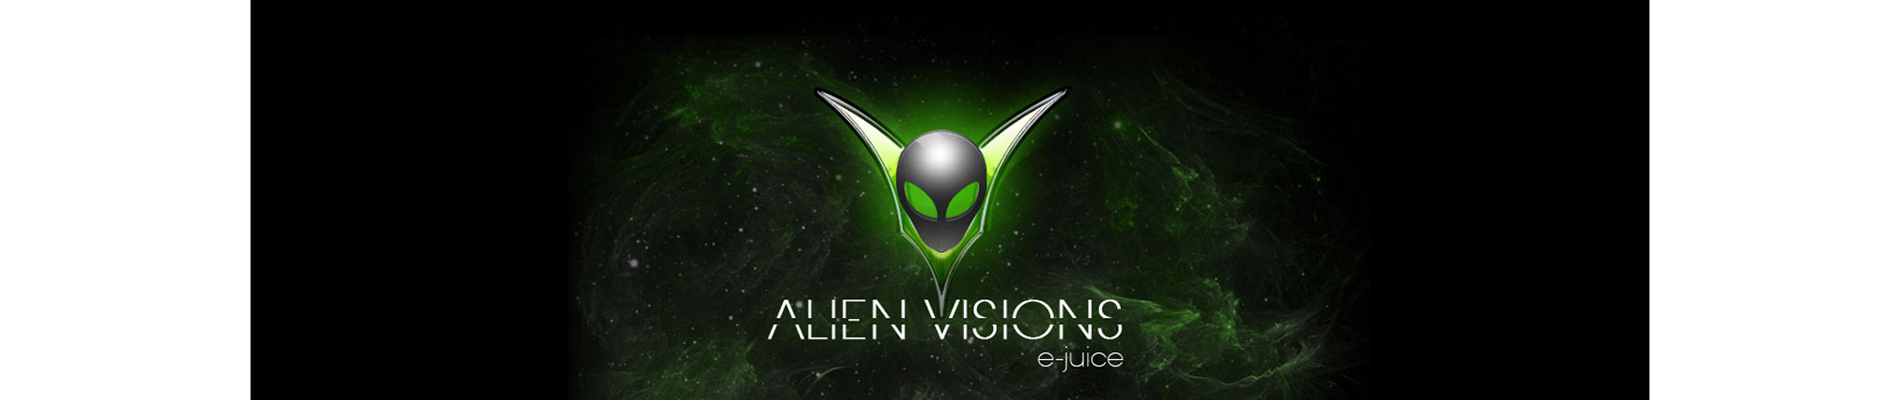 Alien Vision E-juice